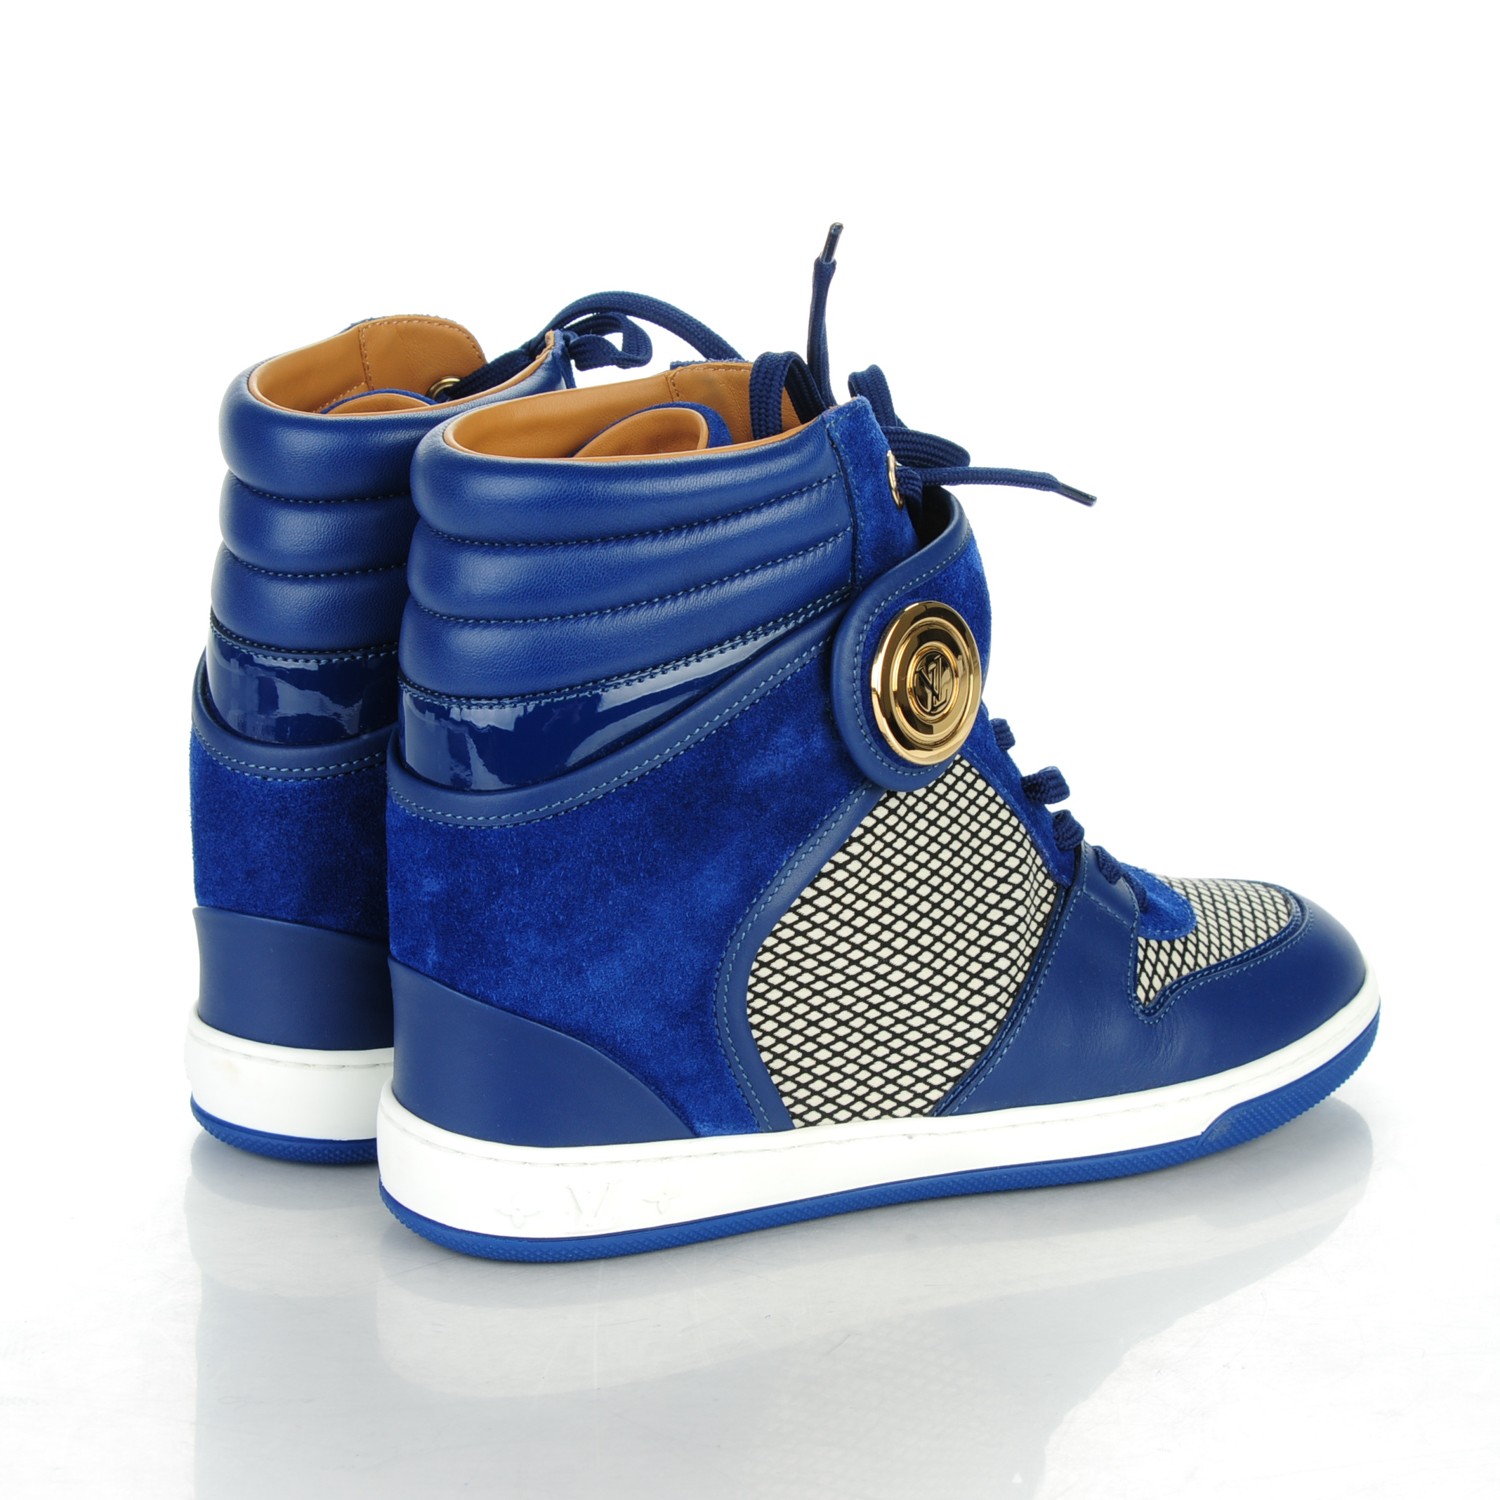 LOUIS VUITTON Suede Calfskin Patchwork Postmark Sneakers Boots 37.5 Bleu Roi 153612